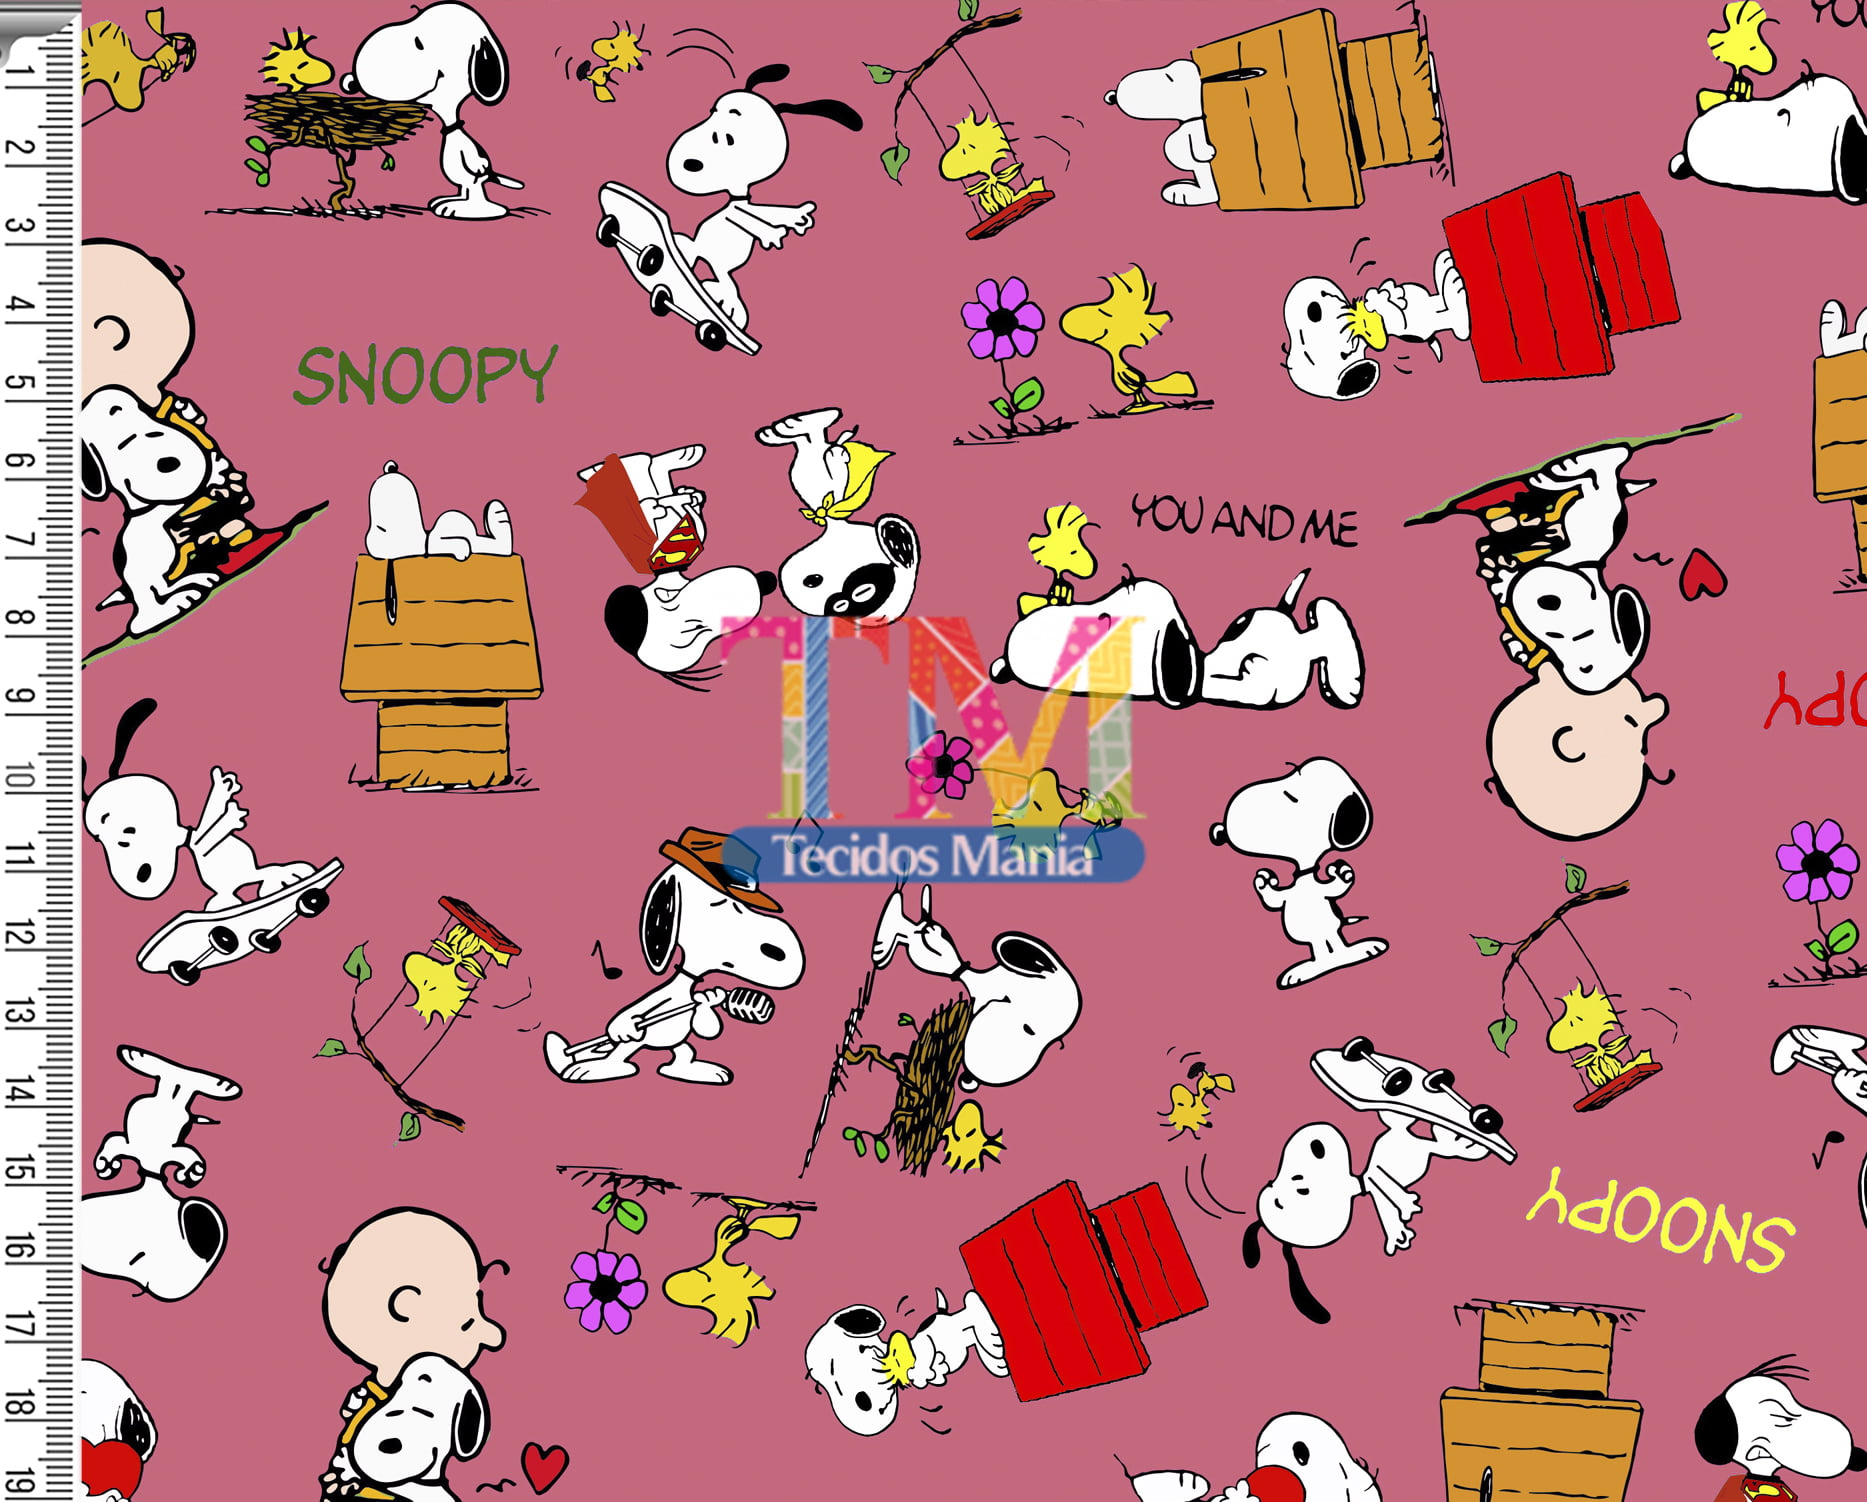 Sintético doll estampado - Snoopy e Charlie Brown - fundo goiaba 